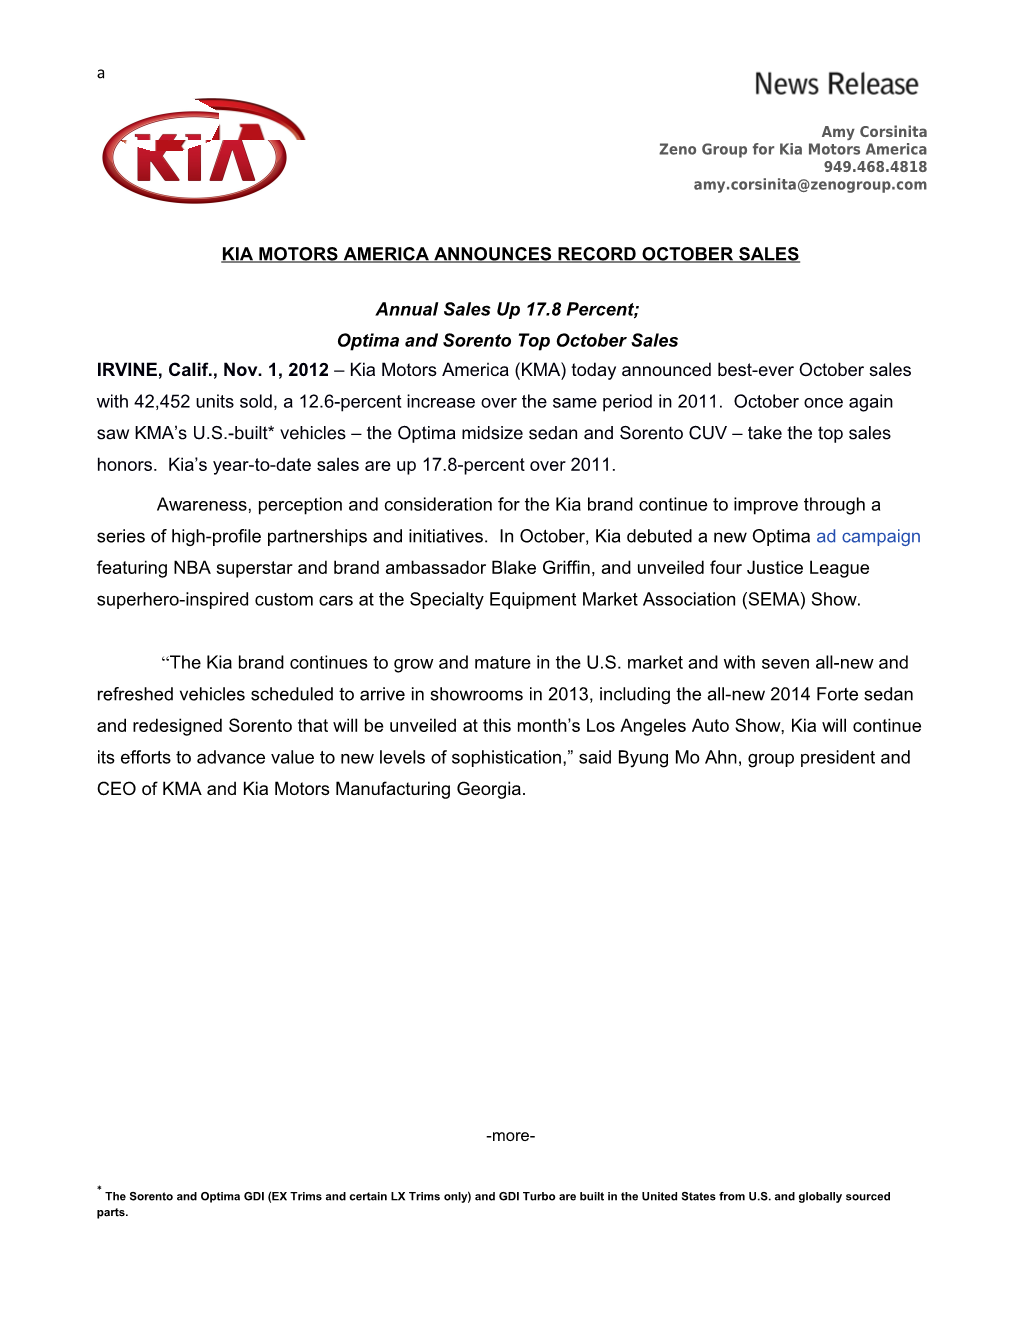 Kia Motors America Announces Record October Sales